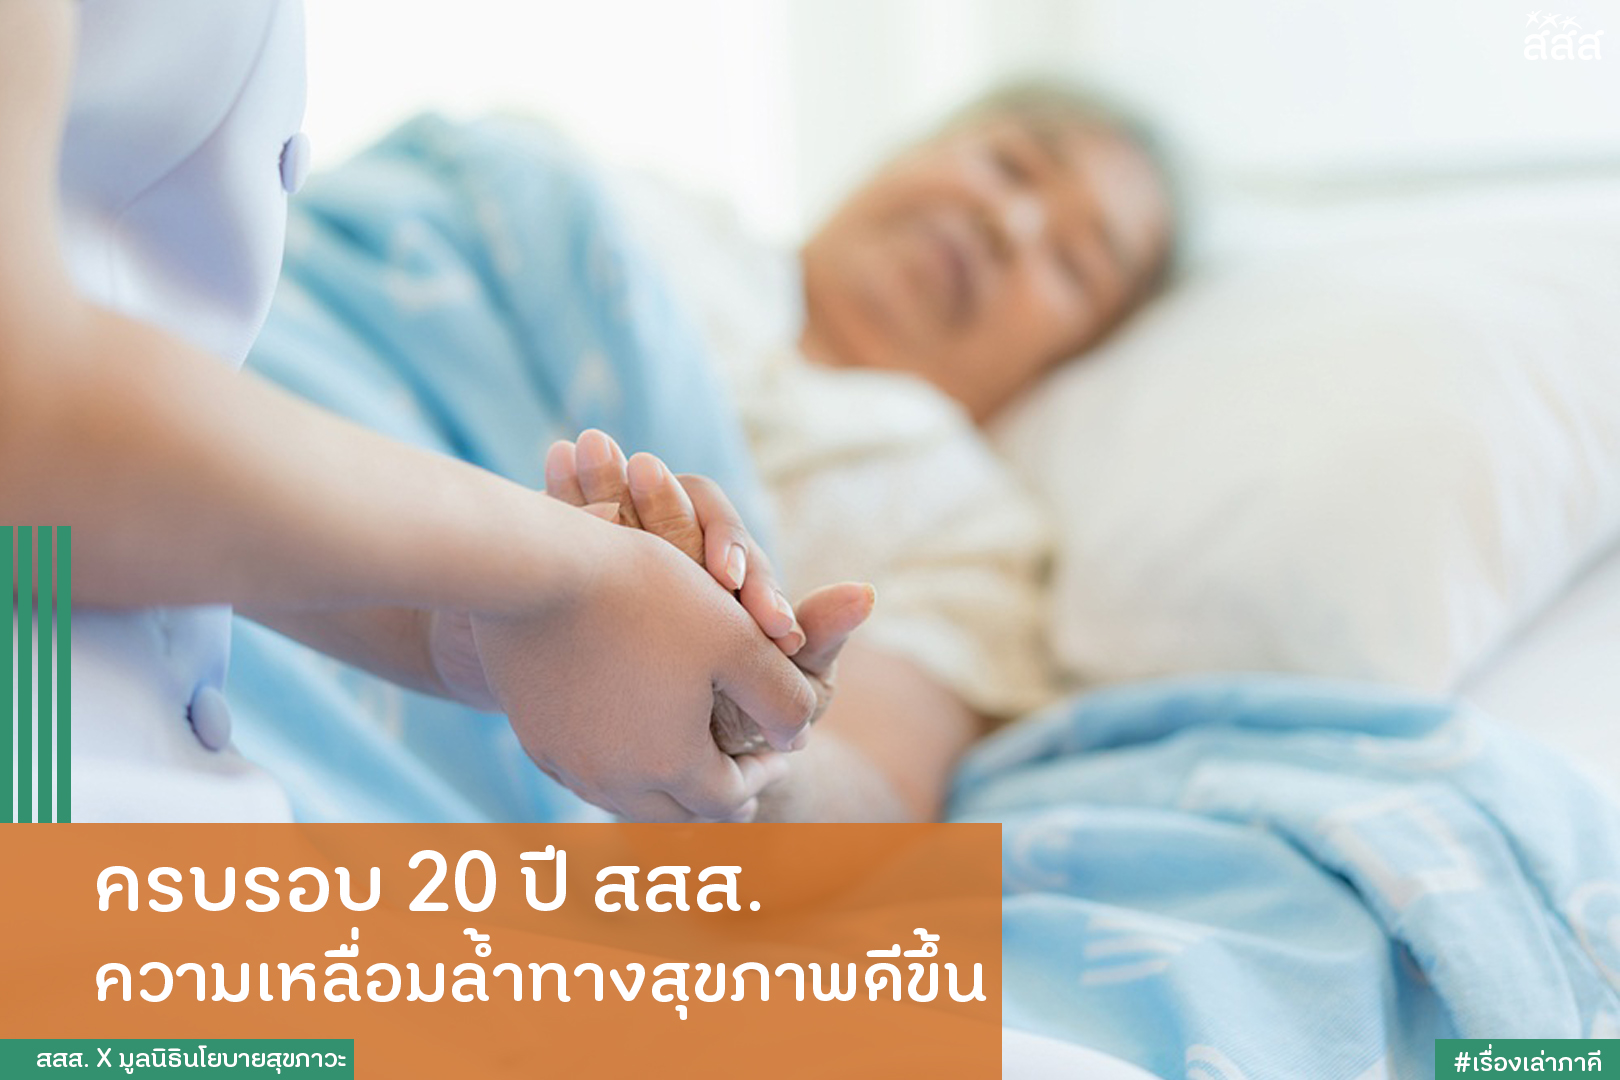 ครบรอบ 20 ปี สสส. ความเหลื่อมล้ำทางสุขภาพดีขึ้น thaihealth